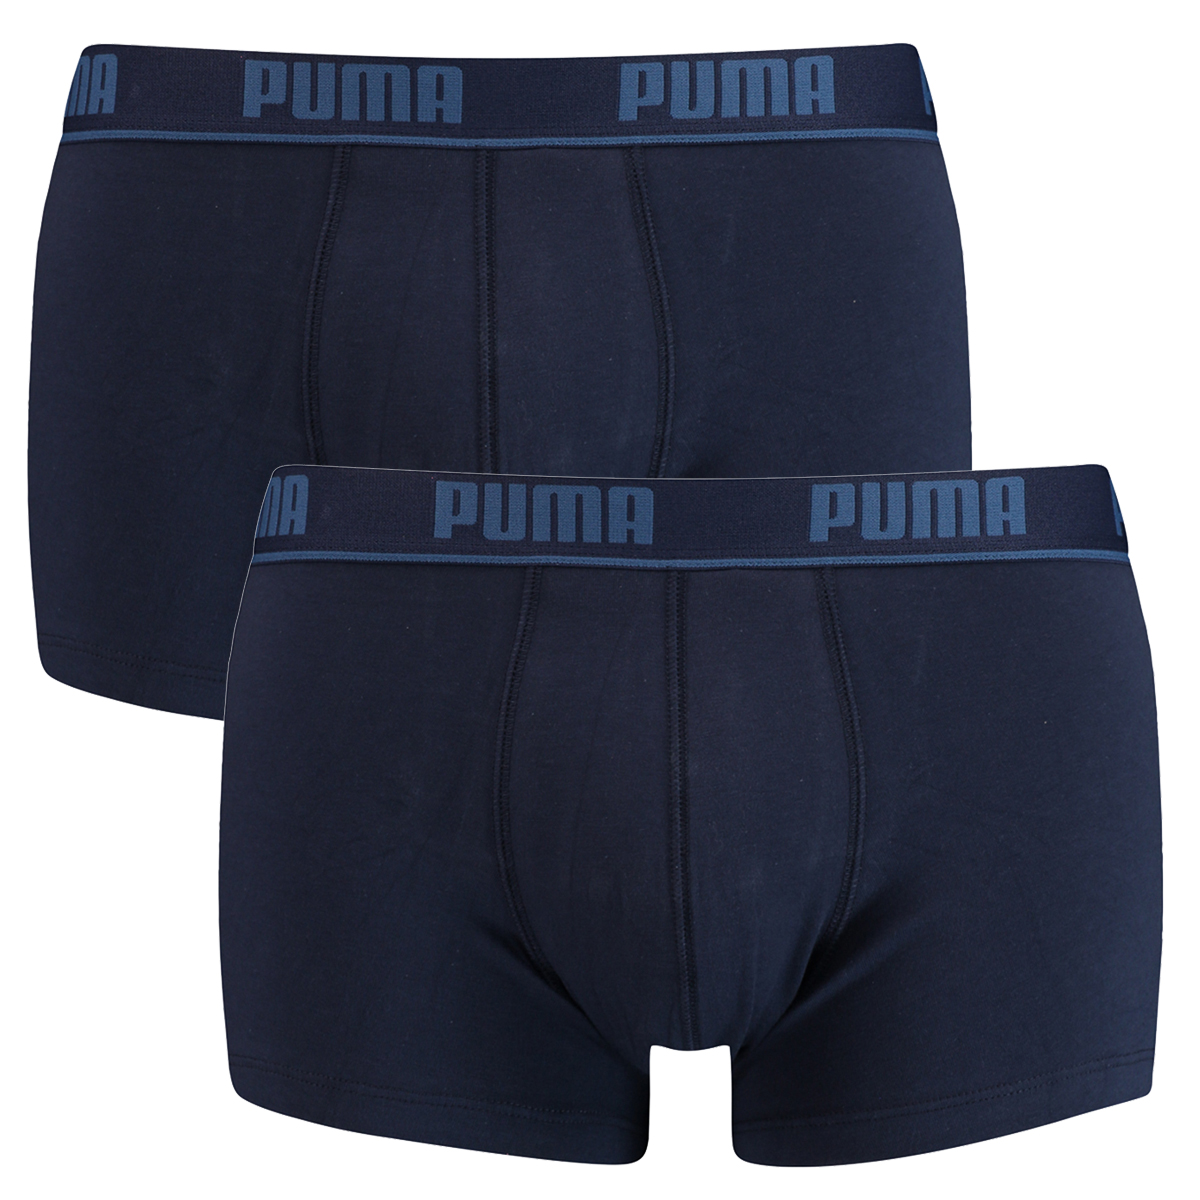 2 er Pack Puma Short Boxer Boxershorts Men Pant Unterwäsche kurz